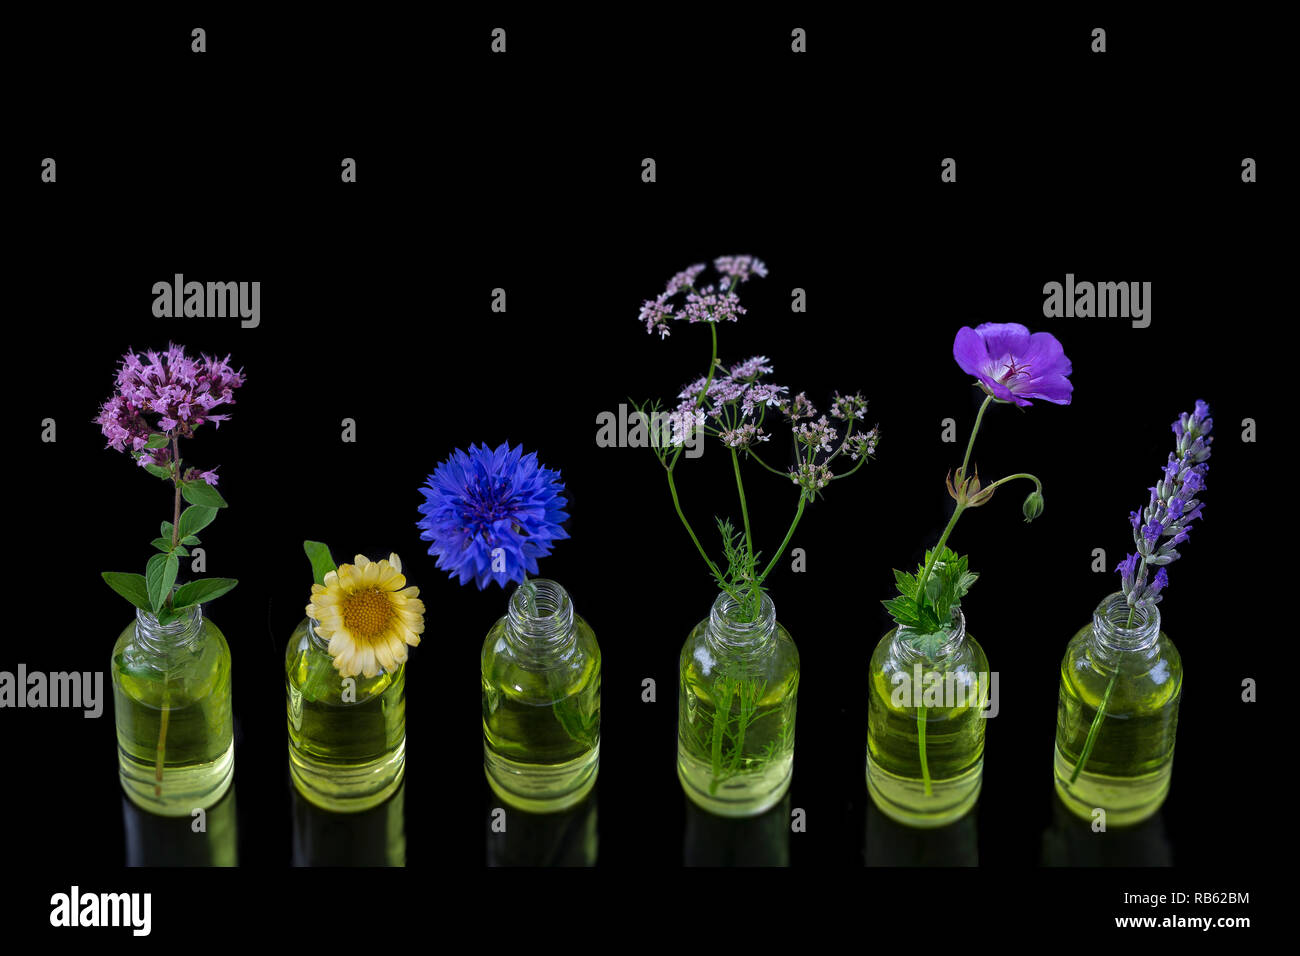 Different healing flowers in small glass bottles on wblackhite Stock Photo